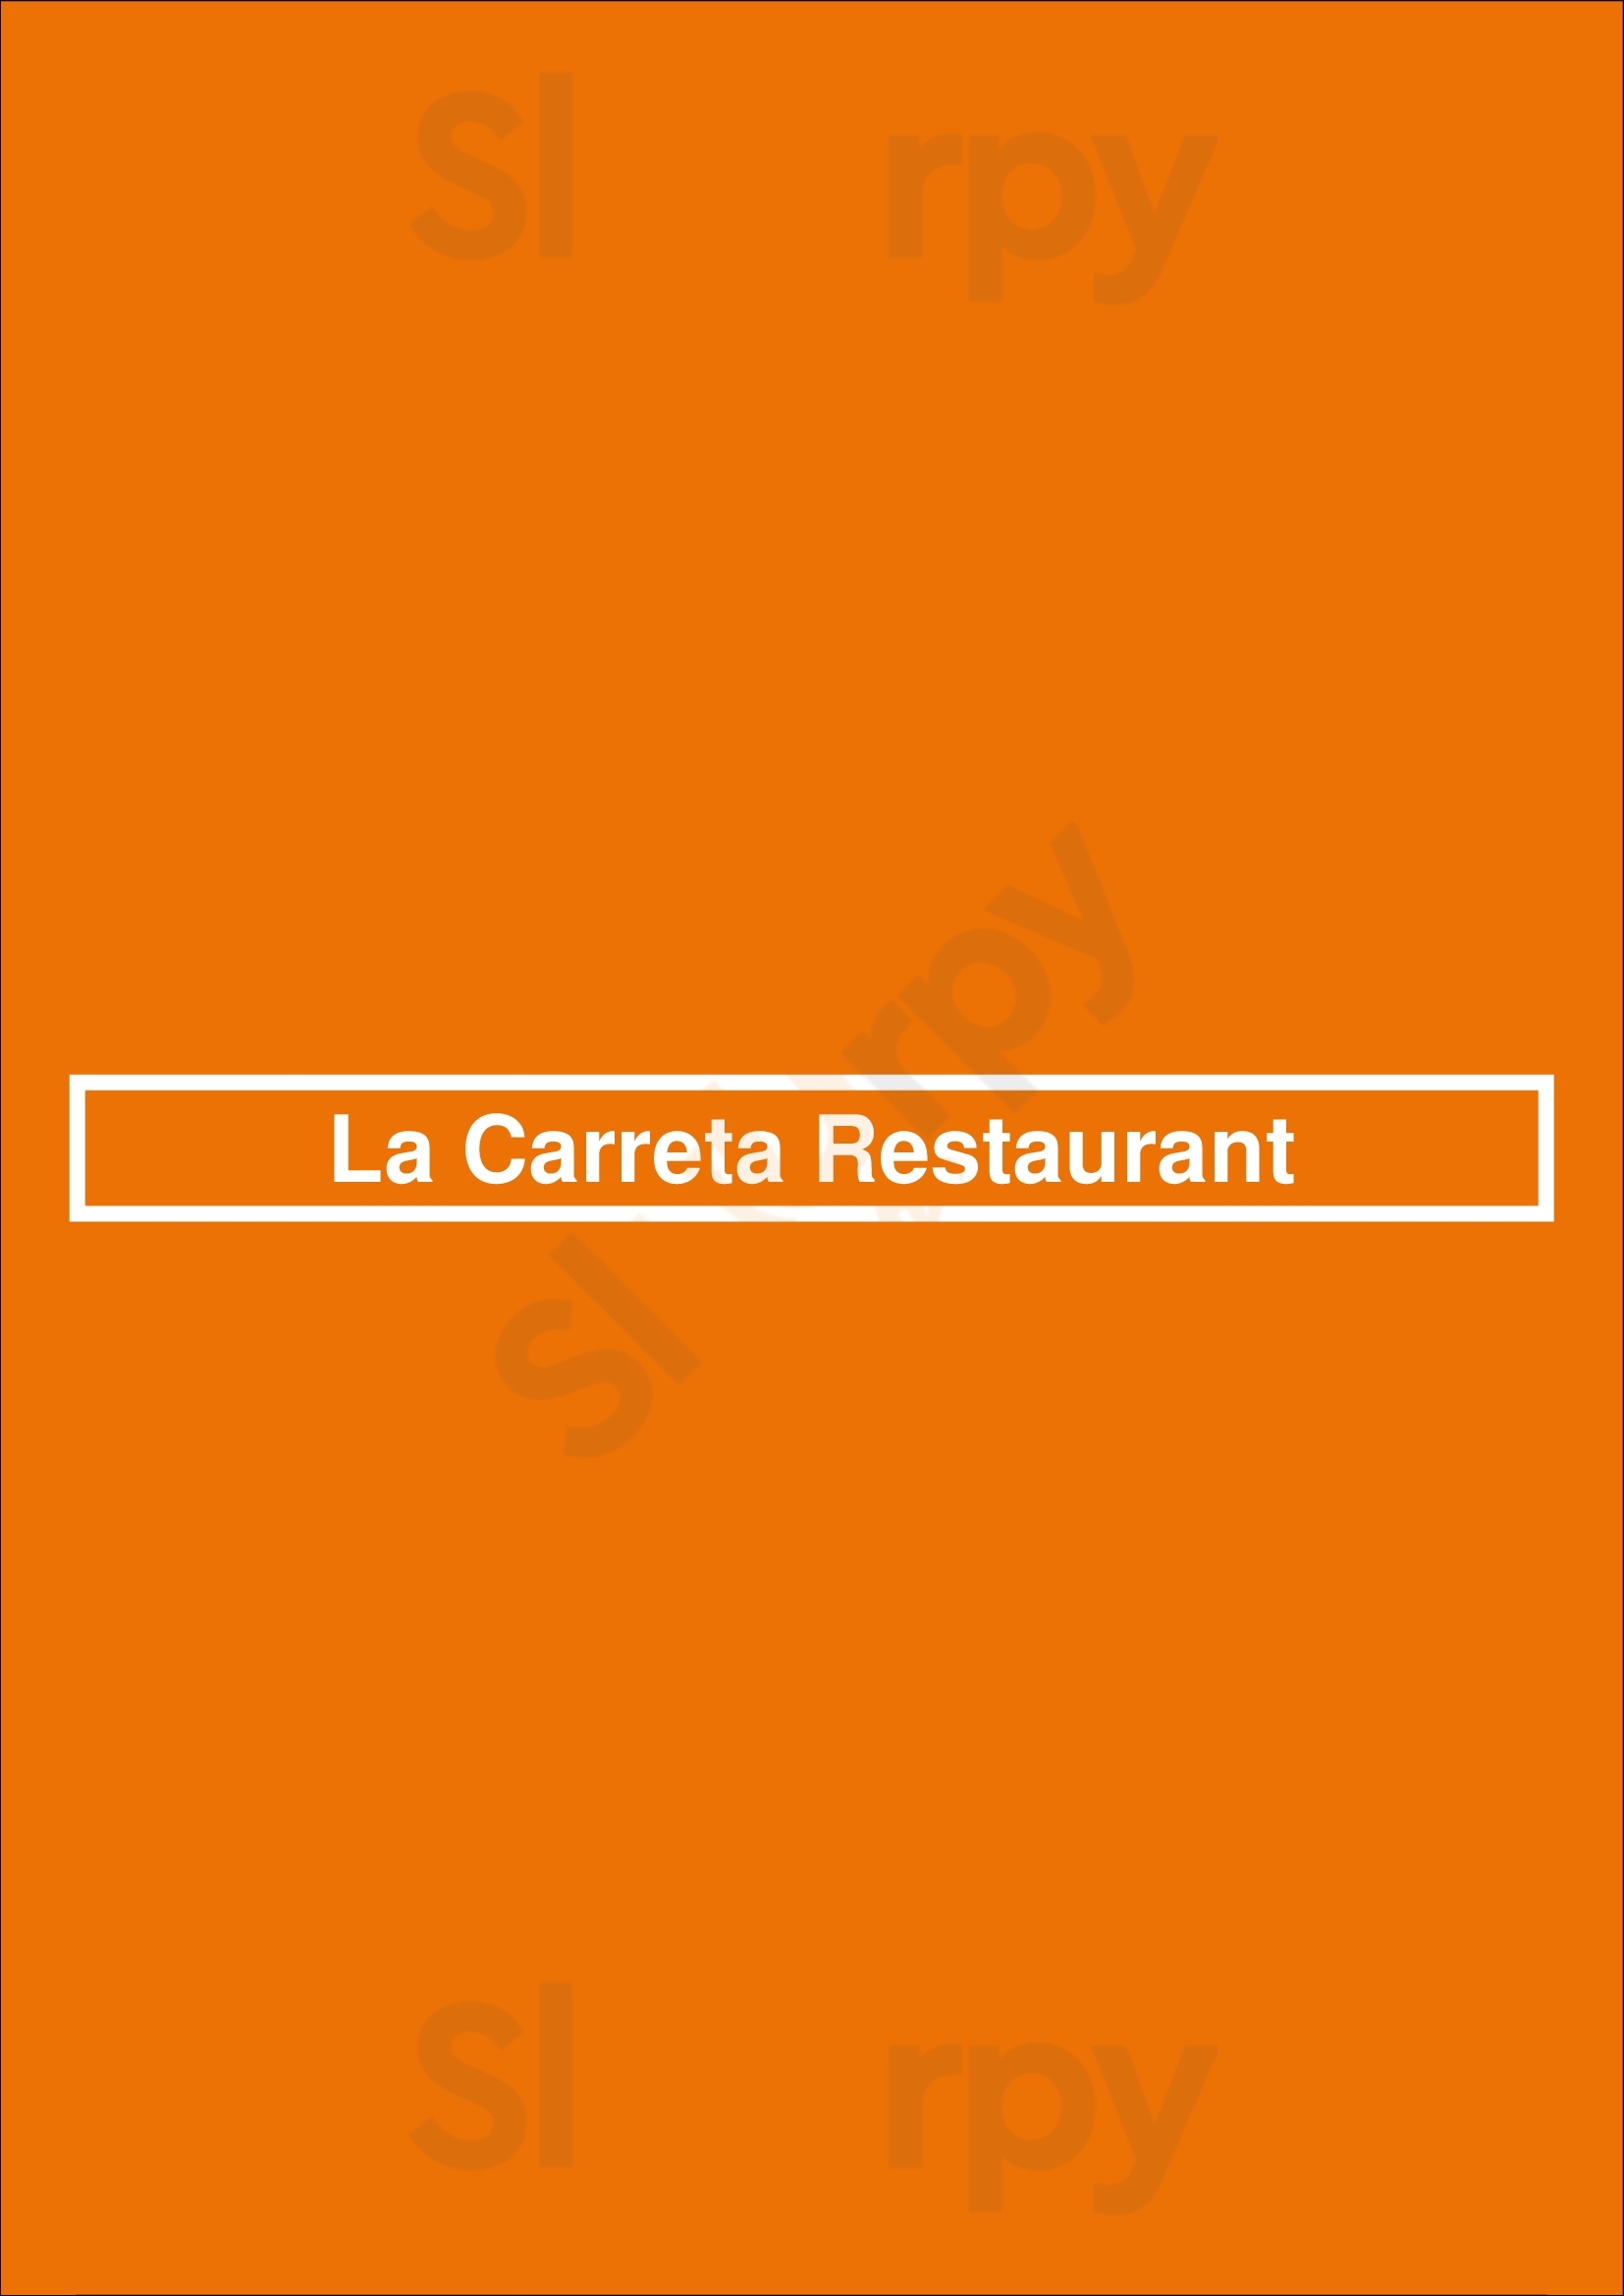 La Carreta Restaurant Pembroke Pines Menu - 1